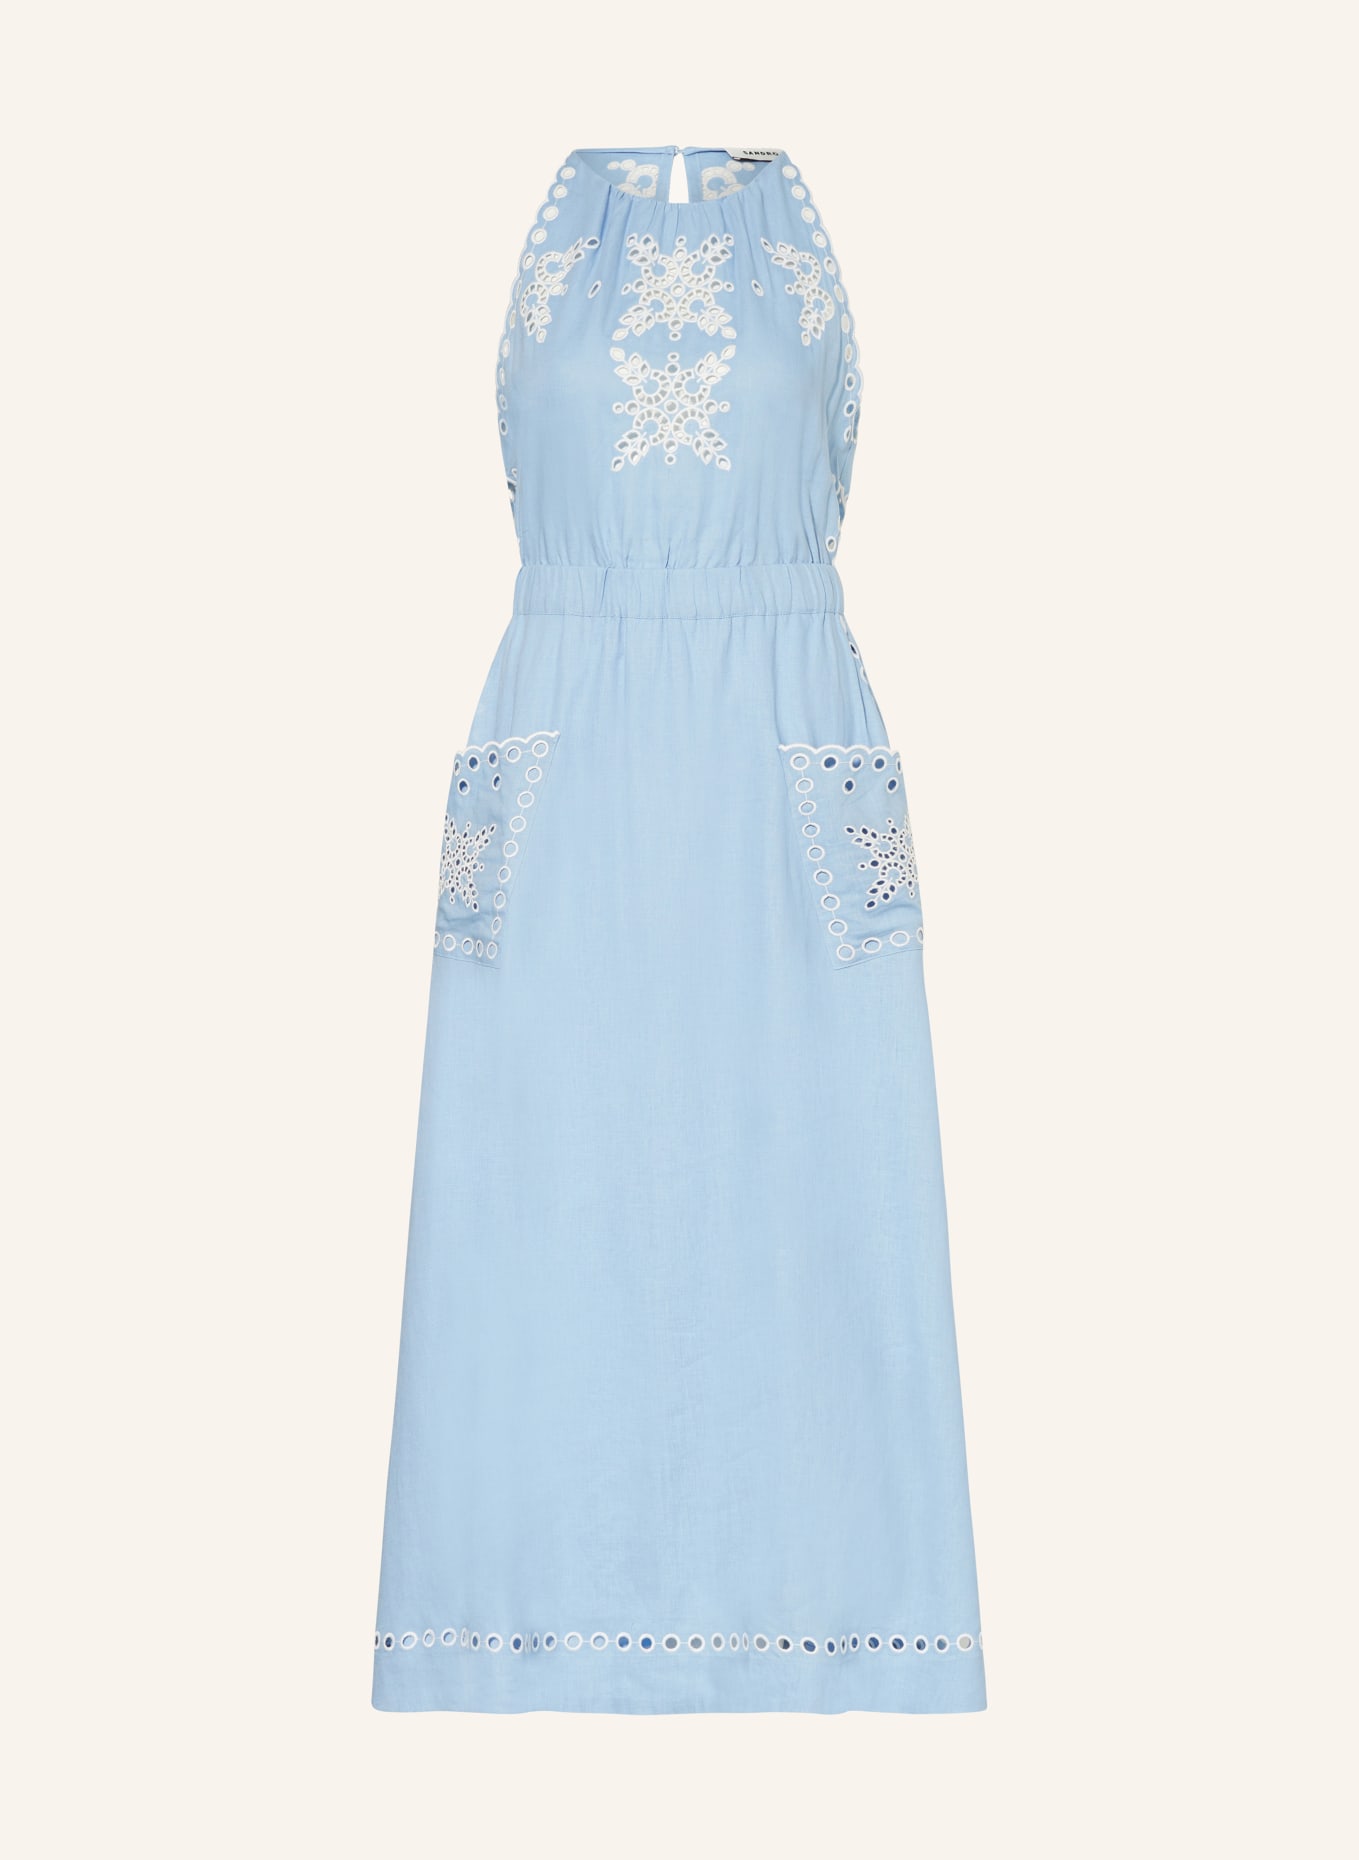 SANDRO Kleid mit Cut-outs und Leinen, Farbe: HELLBLAU (Bild 1)